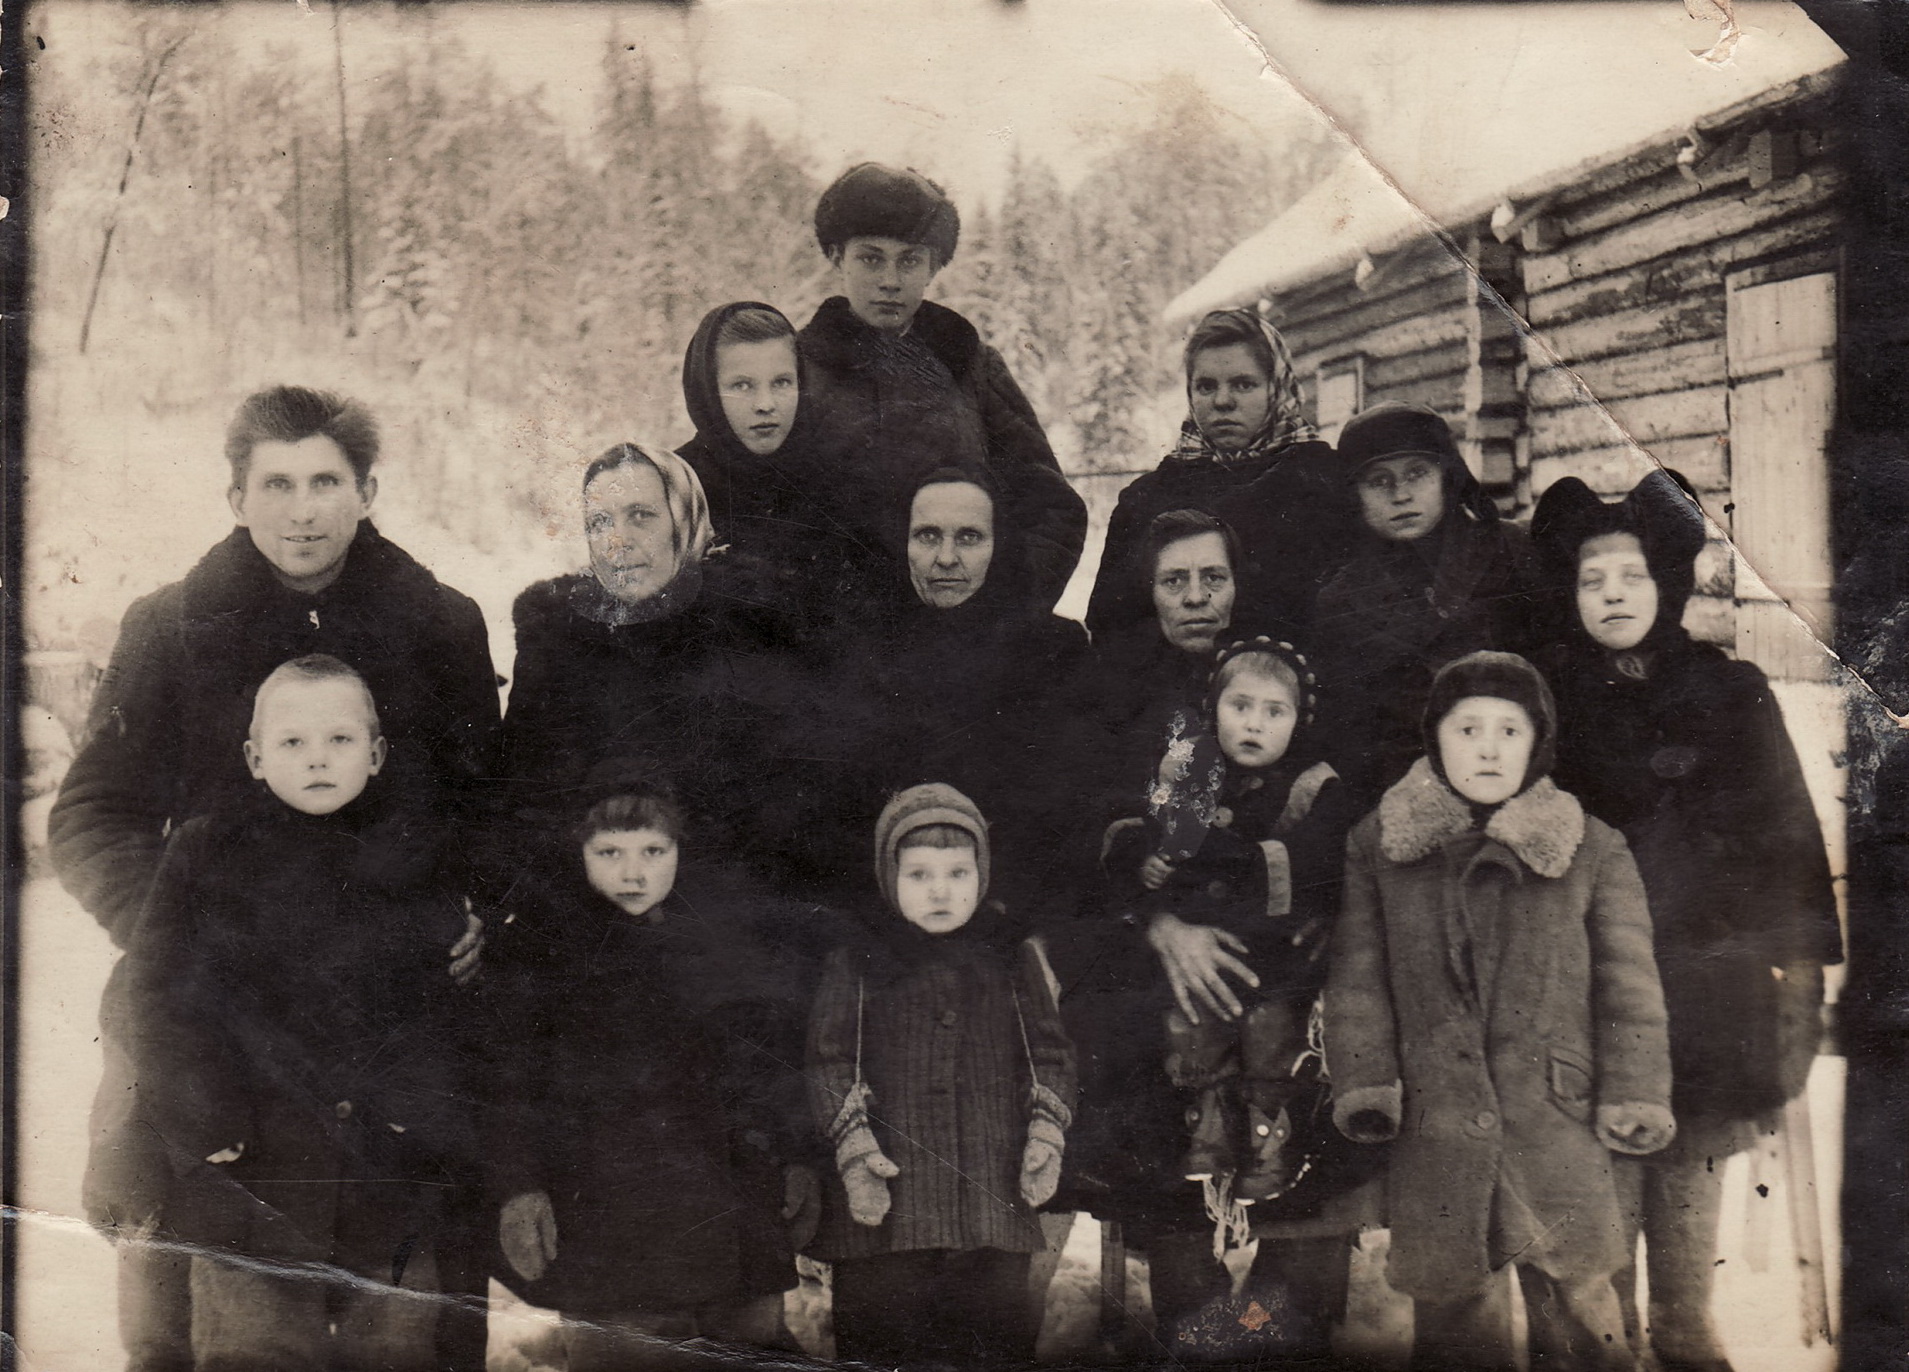 Lietuviai tremtiniai Krasnojarsko krašte, 1948-ieji. Iš kairės: Zizų šeima (4 žmonės), Didžgalvių šeima (motina ant rankų laiko dukrelę Elvyrą, šalia vaikai Danutė ir Algirdas), dešinėje tremtinė Strakalienė su vaikais ir tremtinė Anelė Matuzonytė. D. DIDŽGALVYTĖS asmeninio archyvo nuotrauka